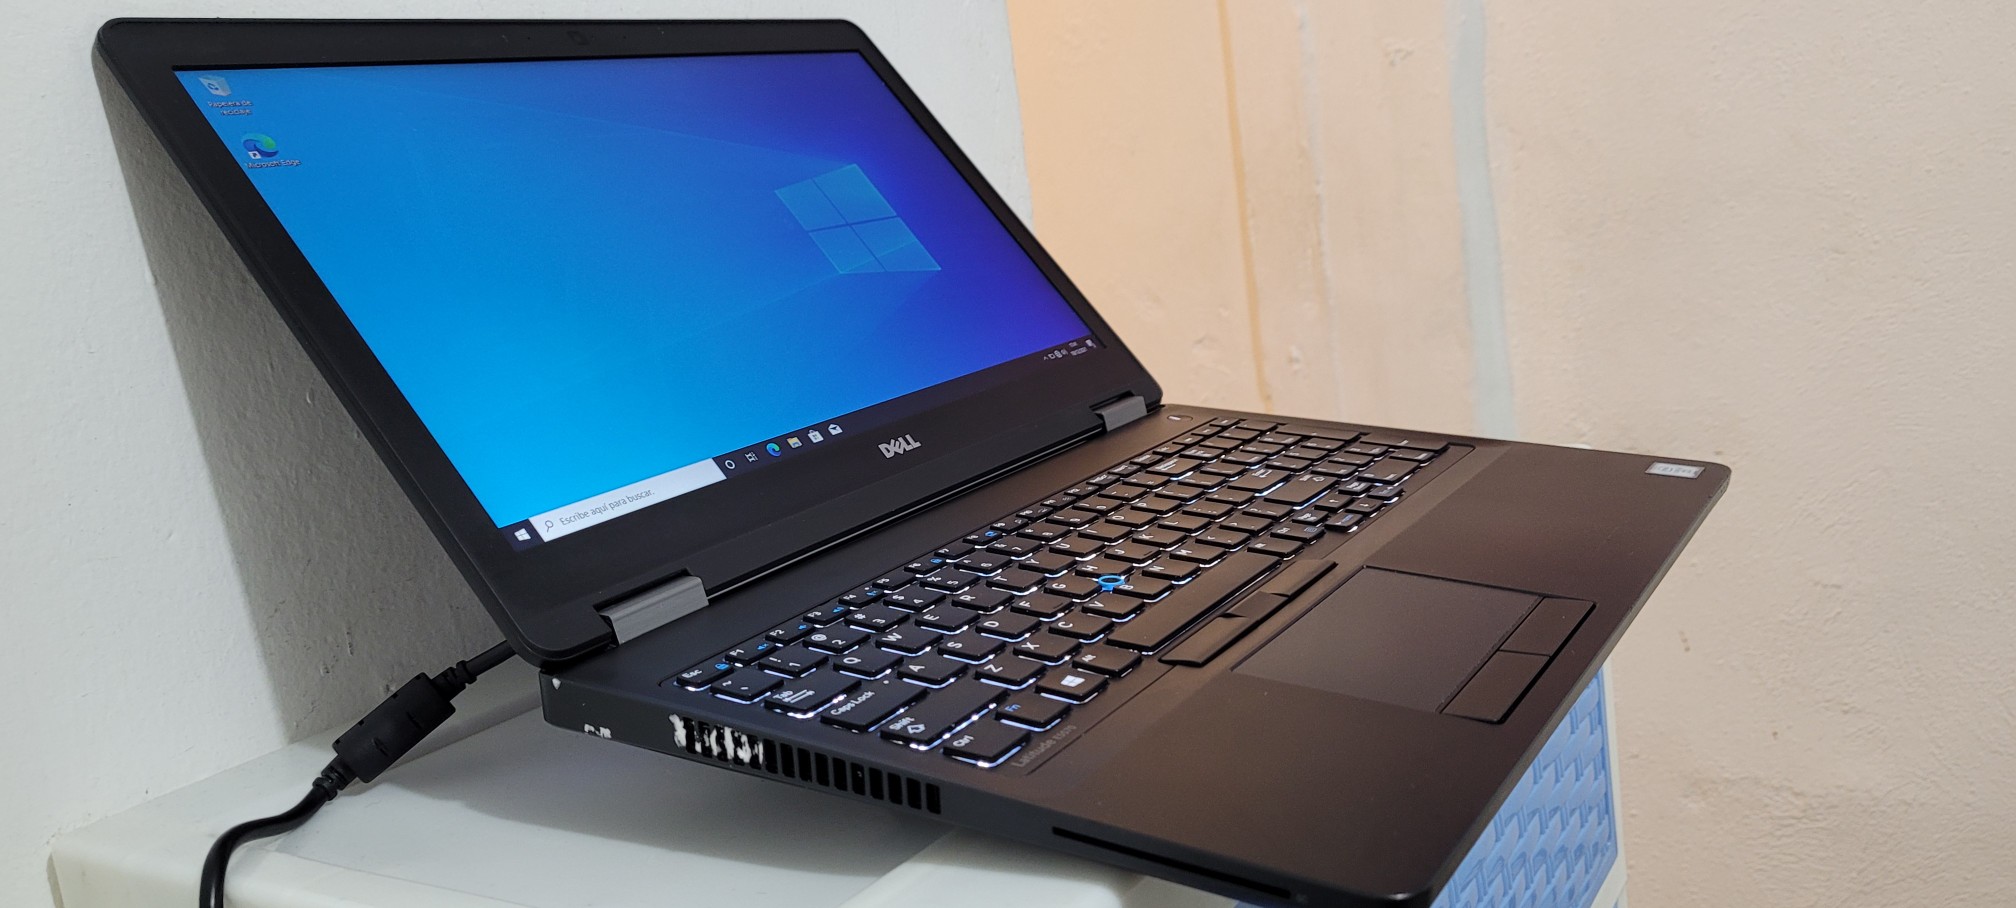 computadoras y laptops - Dell 5570 17 Pulg Core i7 6ta Ram 16gb ddr4 Disco 256gb Doble Tarjeta de Video 1